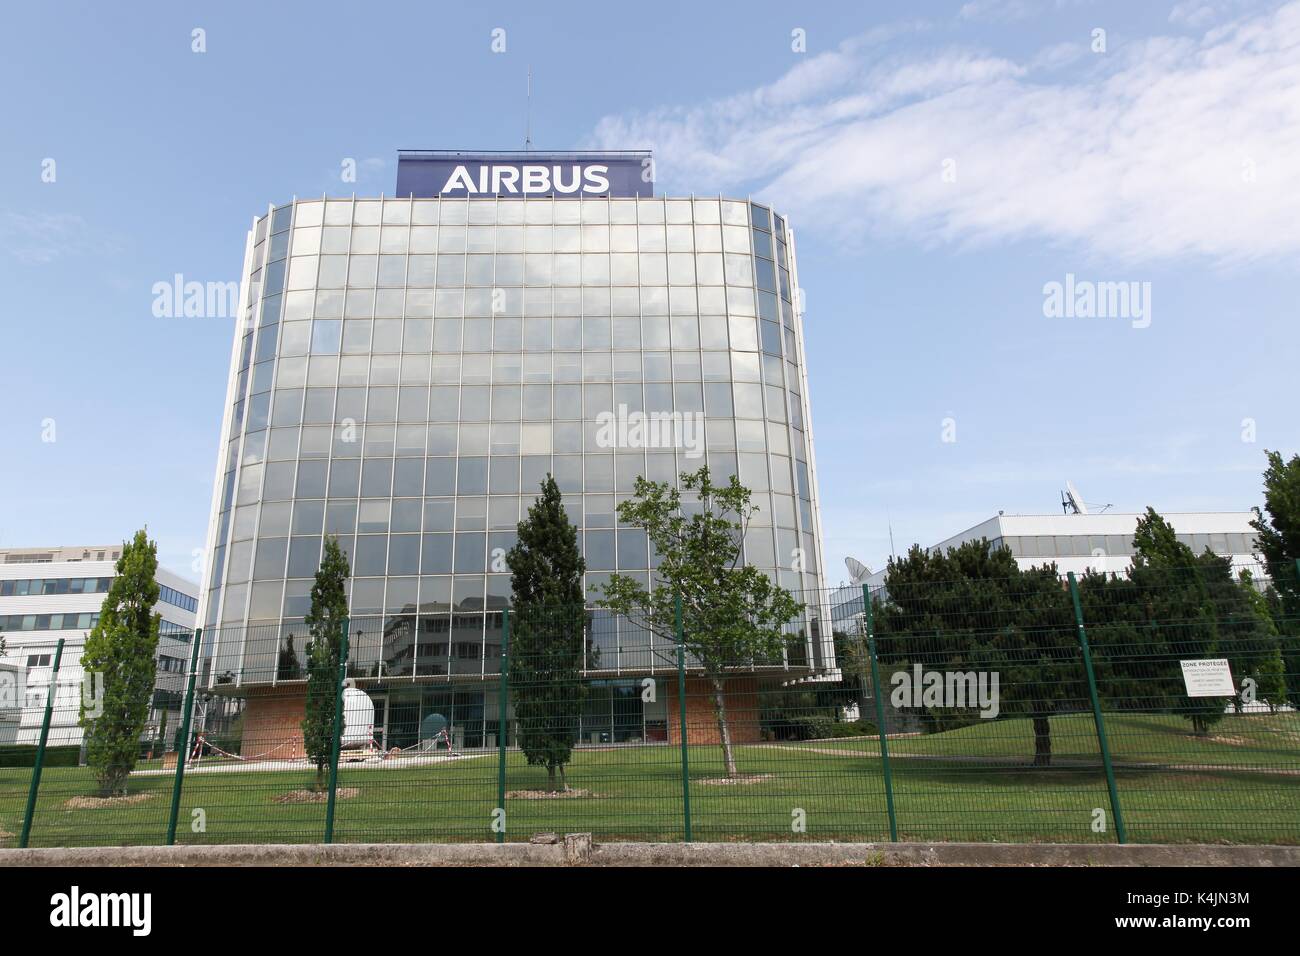 Toulouse, Francia - 2 de junio, 2017: Airbus edificio. Airbus es una división de la multinacional Airbus se que fabrica aviones civiles. Foto de stock